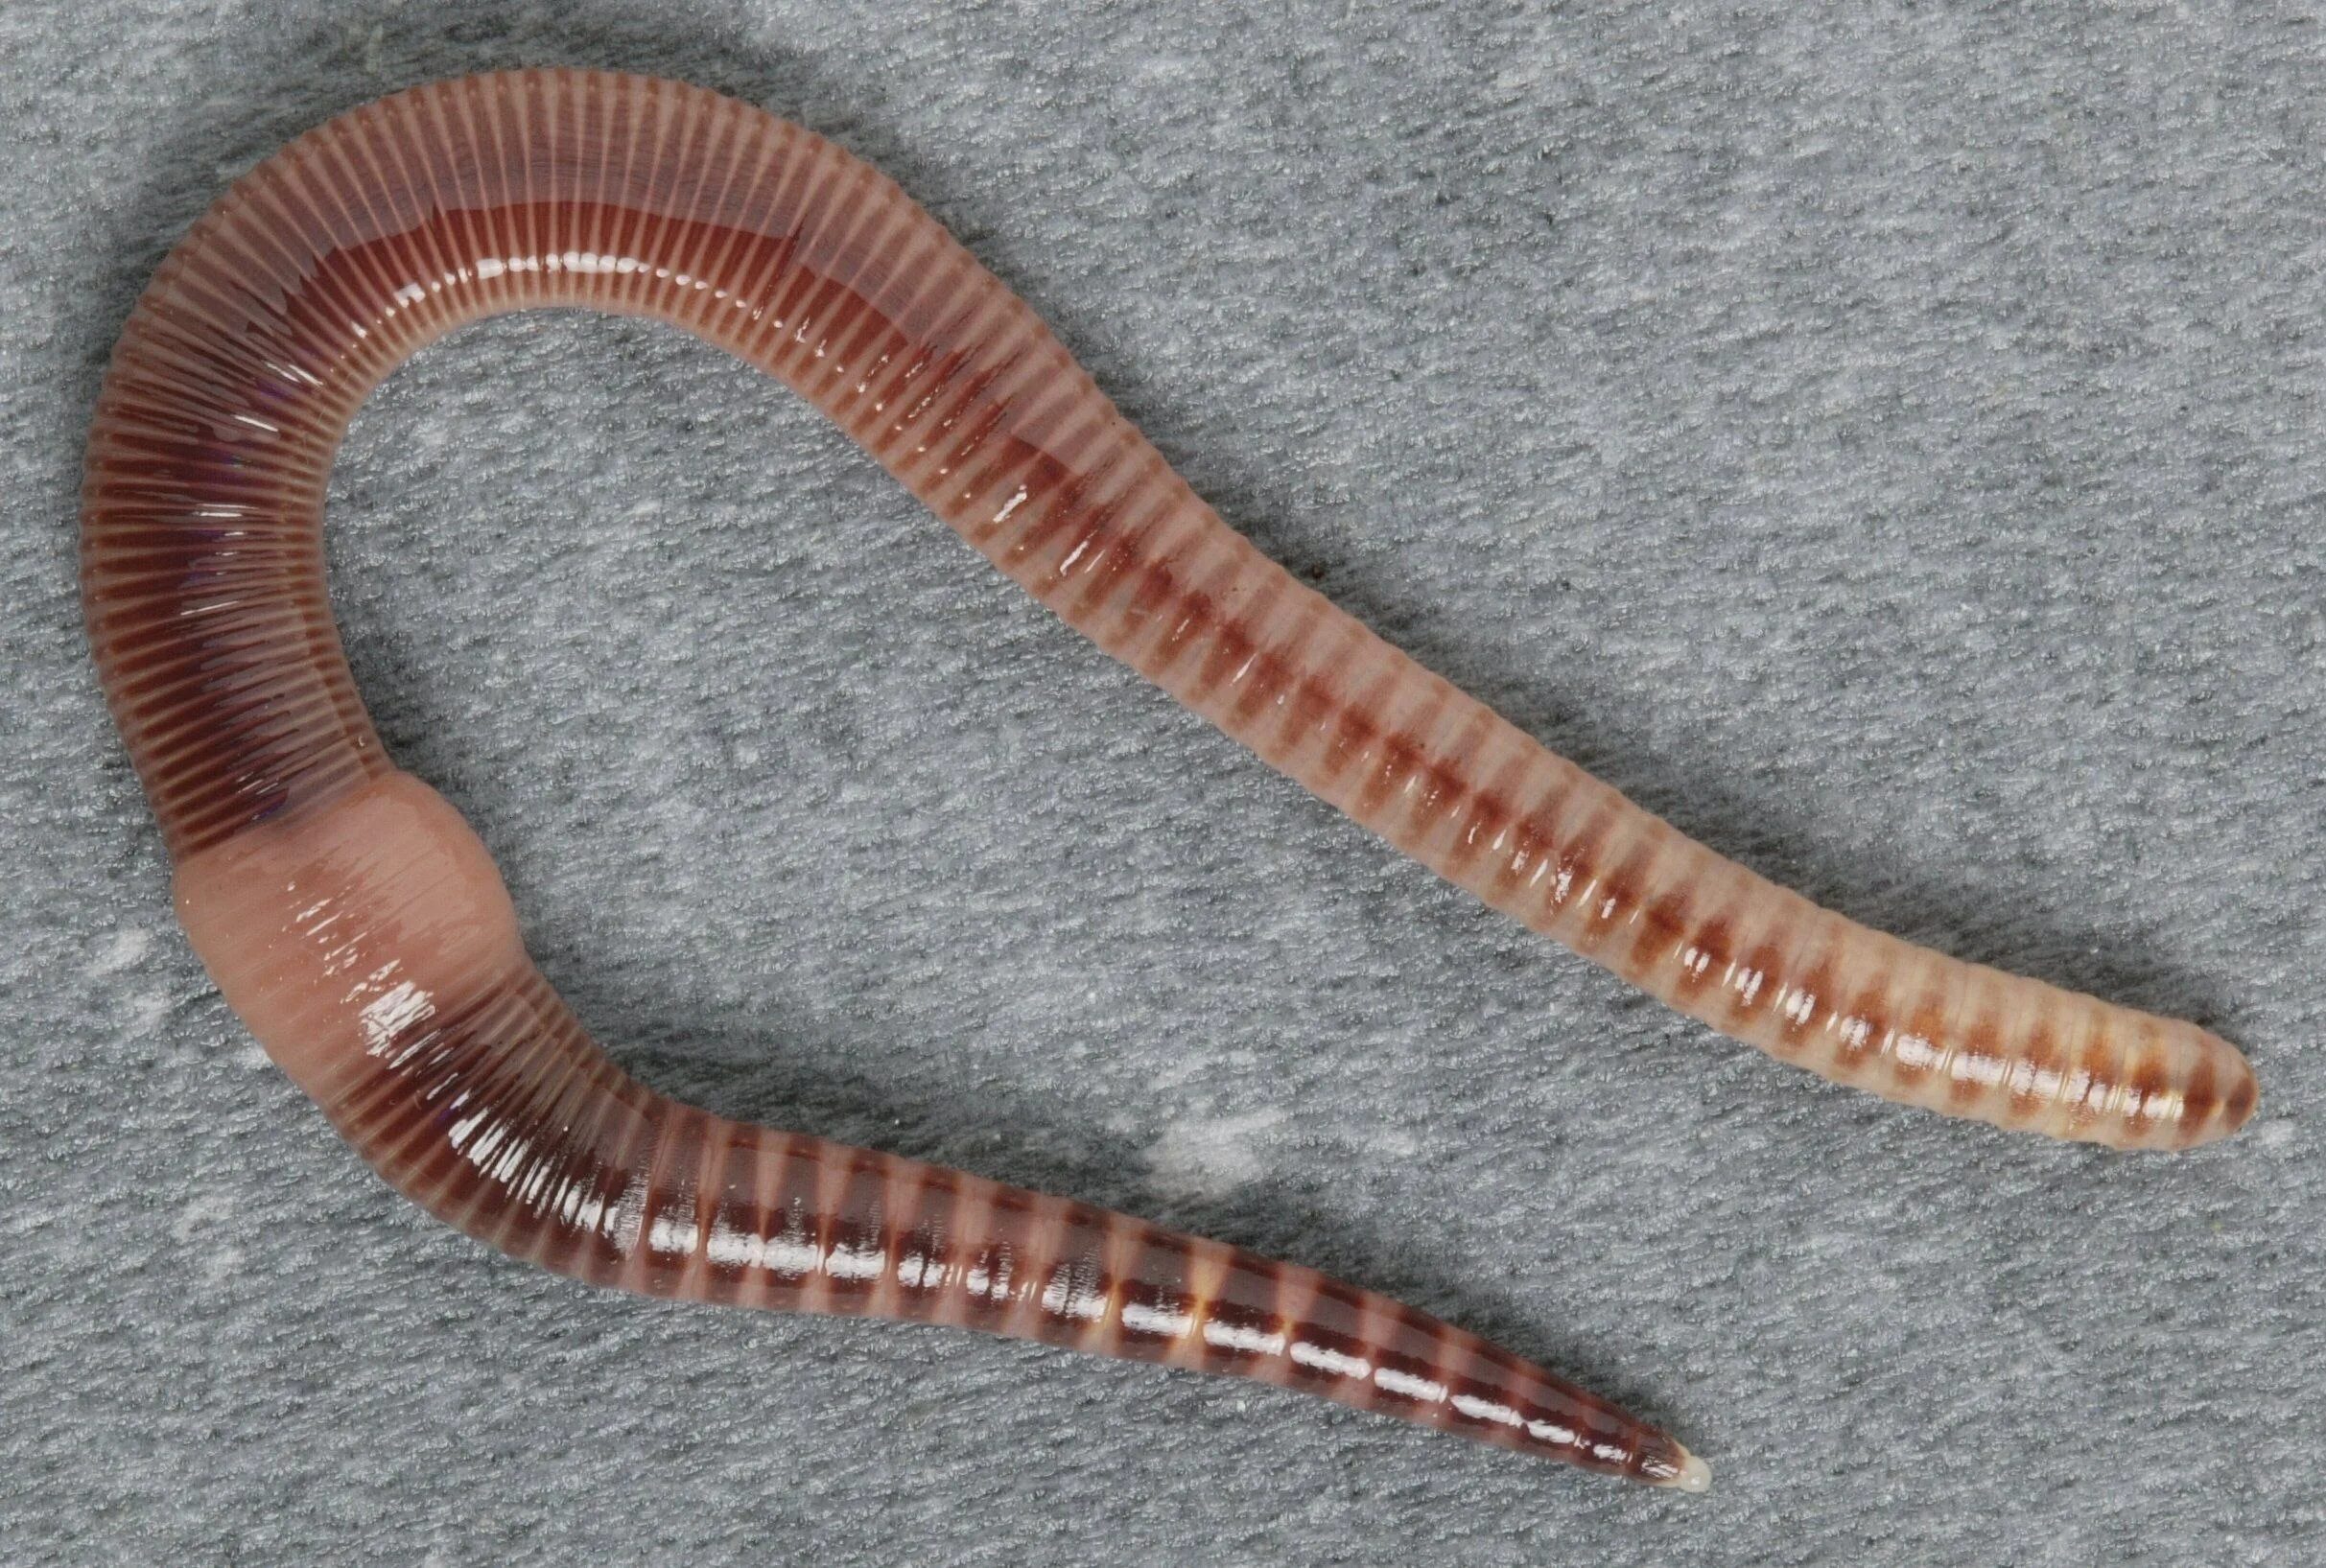 Червей стволы. Малошетниковфй крльчатые черви. Малощетинковые кольчатые черви. Малощетинковые черви (дождевой червь). Oligochaeta (Малощетинковые черви).